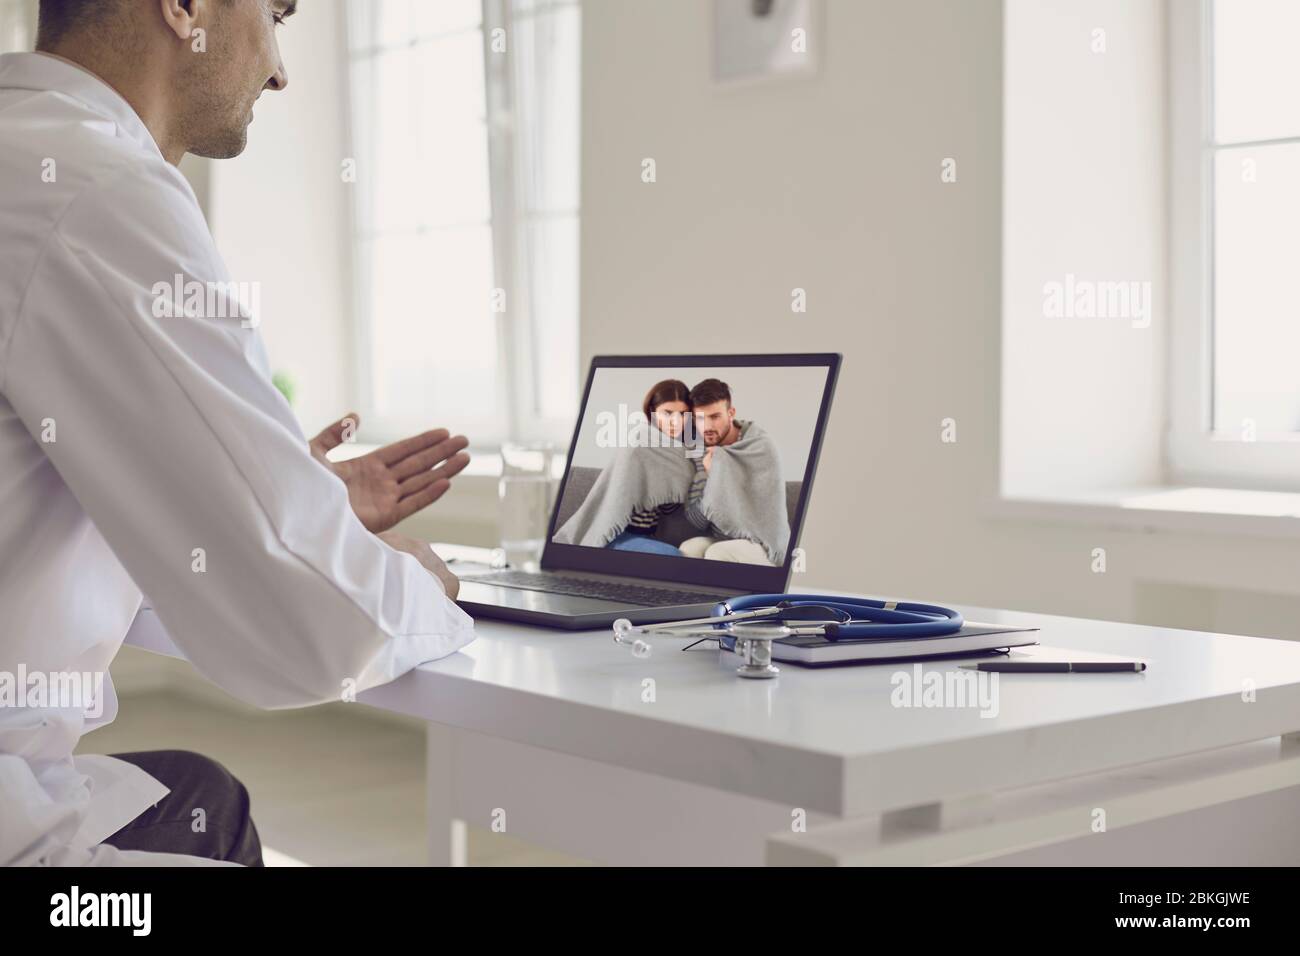 Médico en línea. El médico habla con una pareja de pacientes usando un portátil sentado detrás de una pajita en una clínica. Consulta médica en línea. Foto de stock